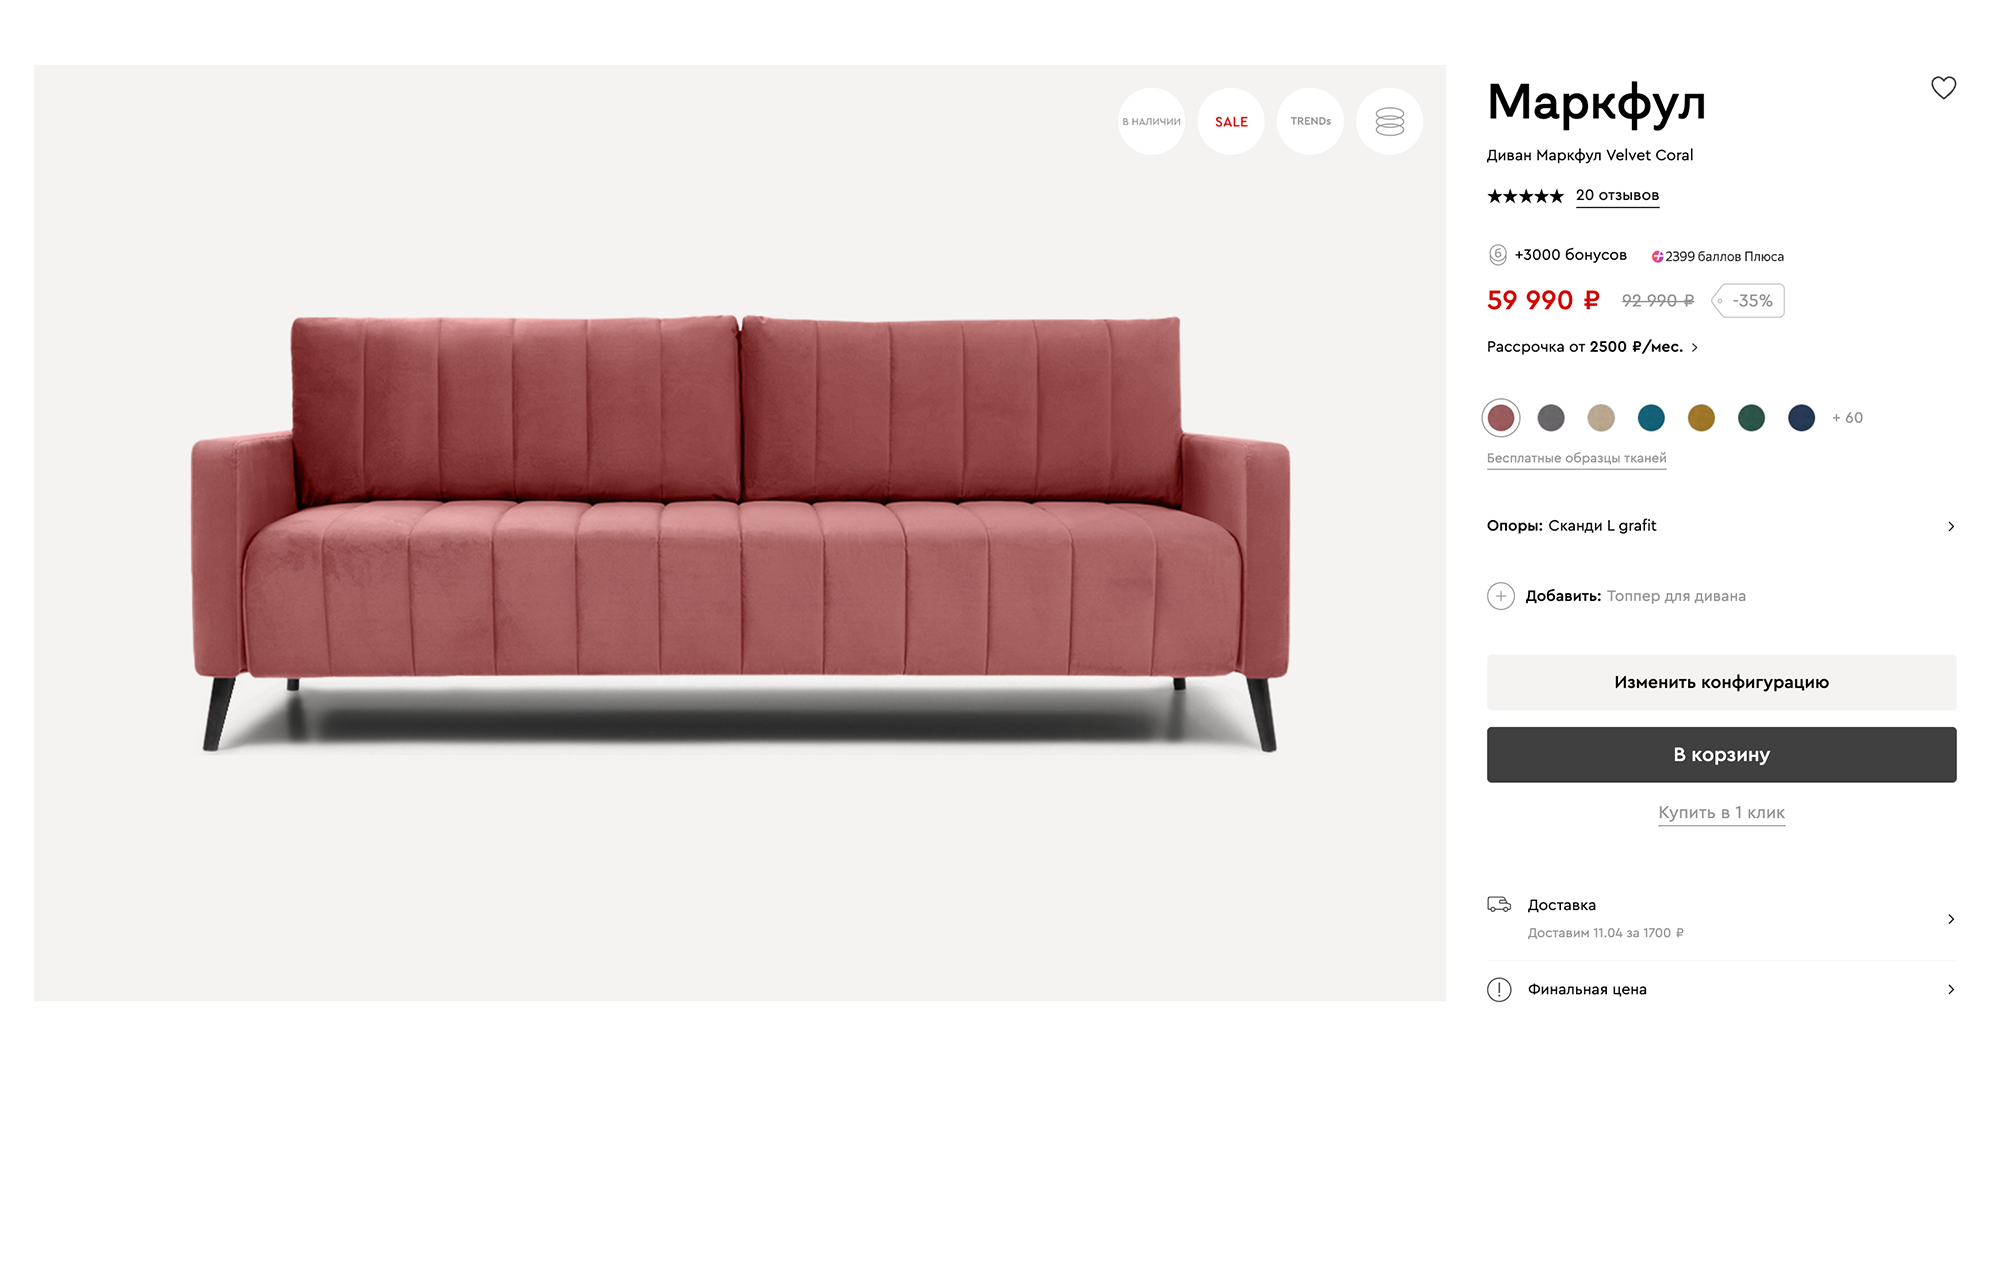 Этот диван подходит для мидсенчури по цвету, форме, и даже ножки сделаны как надо. Источник: divan.ru